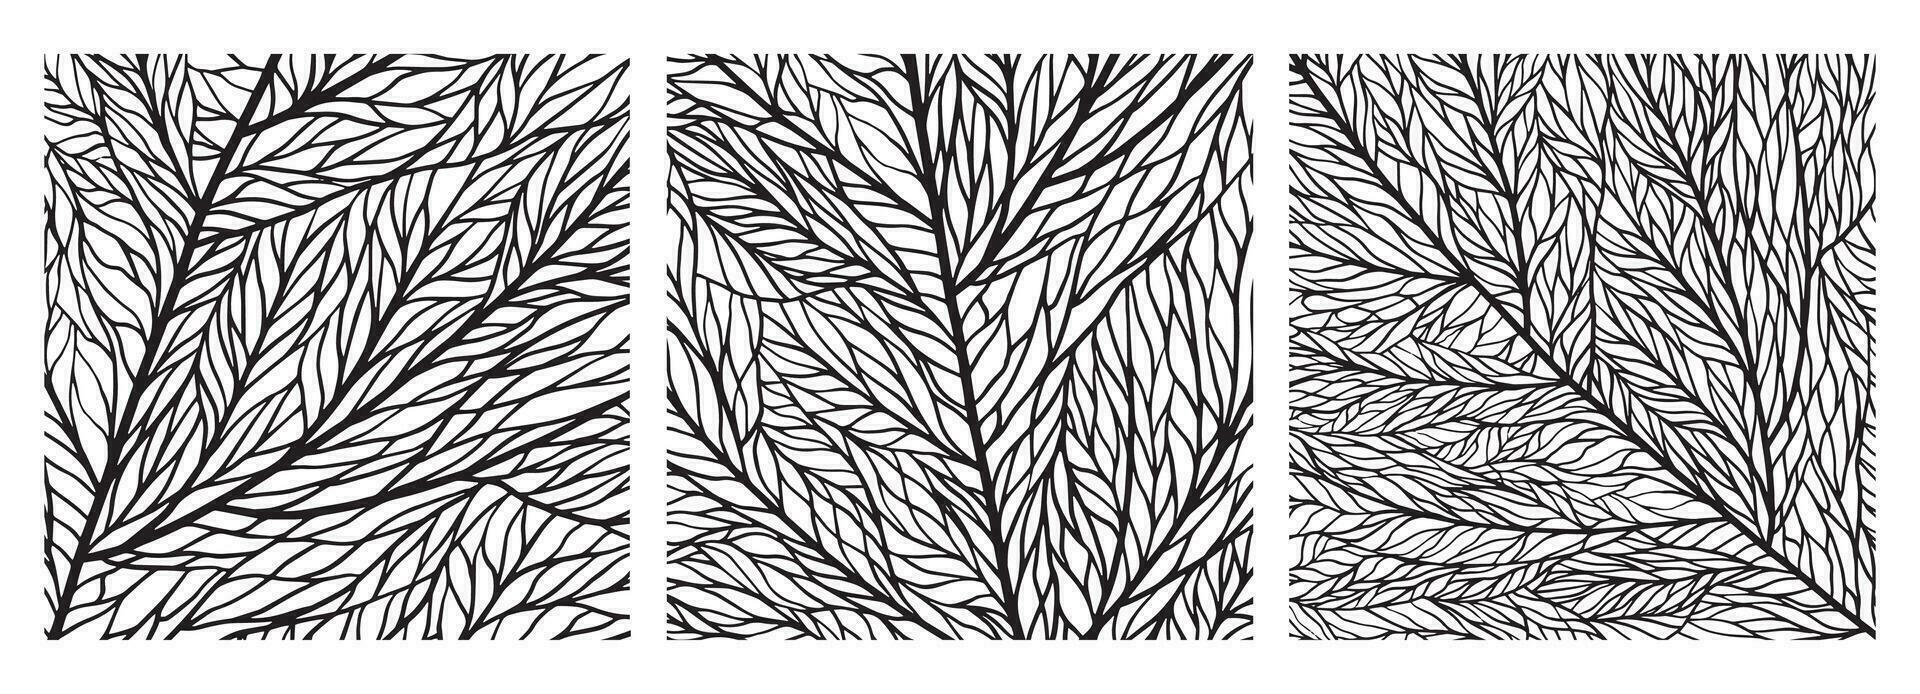 conjunto de hoja texturas con las venas y células. negro y blanco cerca arriba hoja modelo. hoja estructura. mosaico ornamento de macro textura de plantas vector